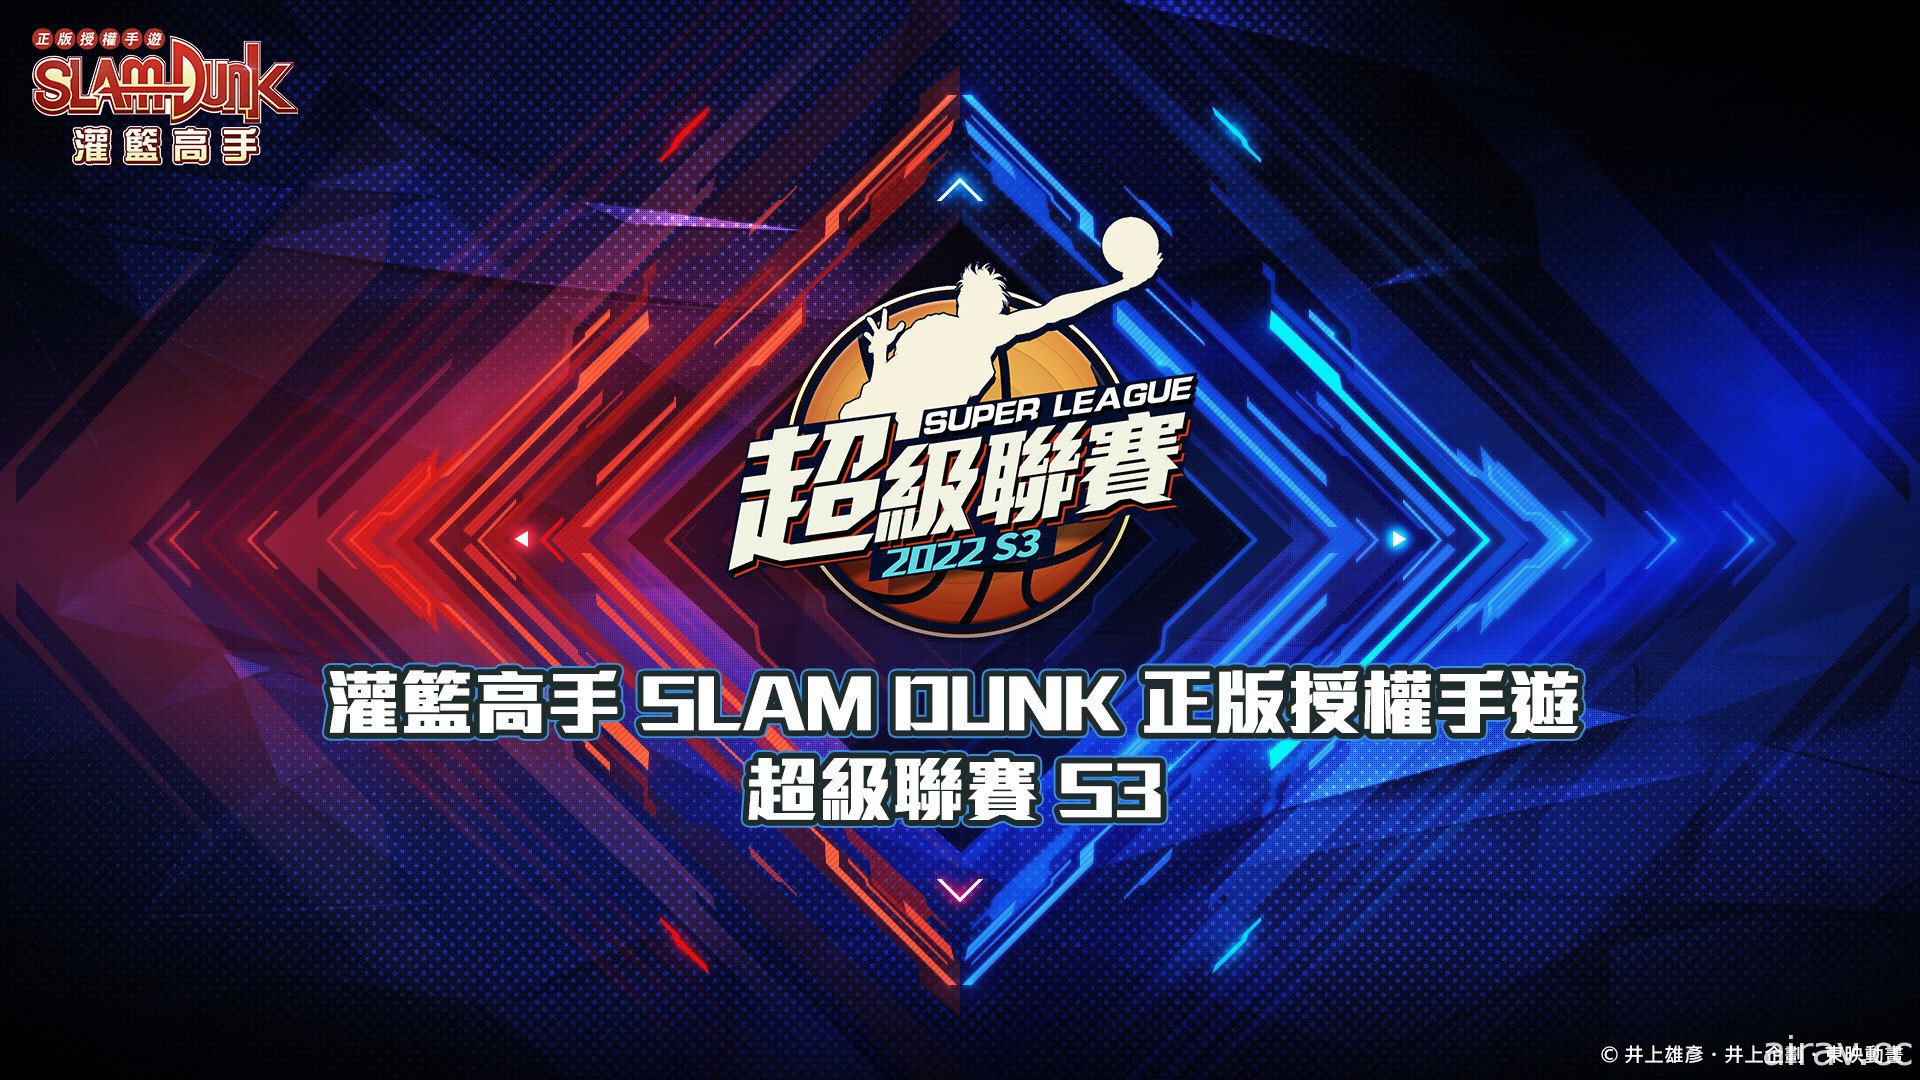 《灌篮高手 SLAM DUNK》高野昭一球员资料登场 超级联赛 S3 总决赛 3/27 开打